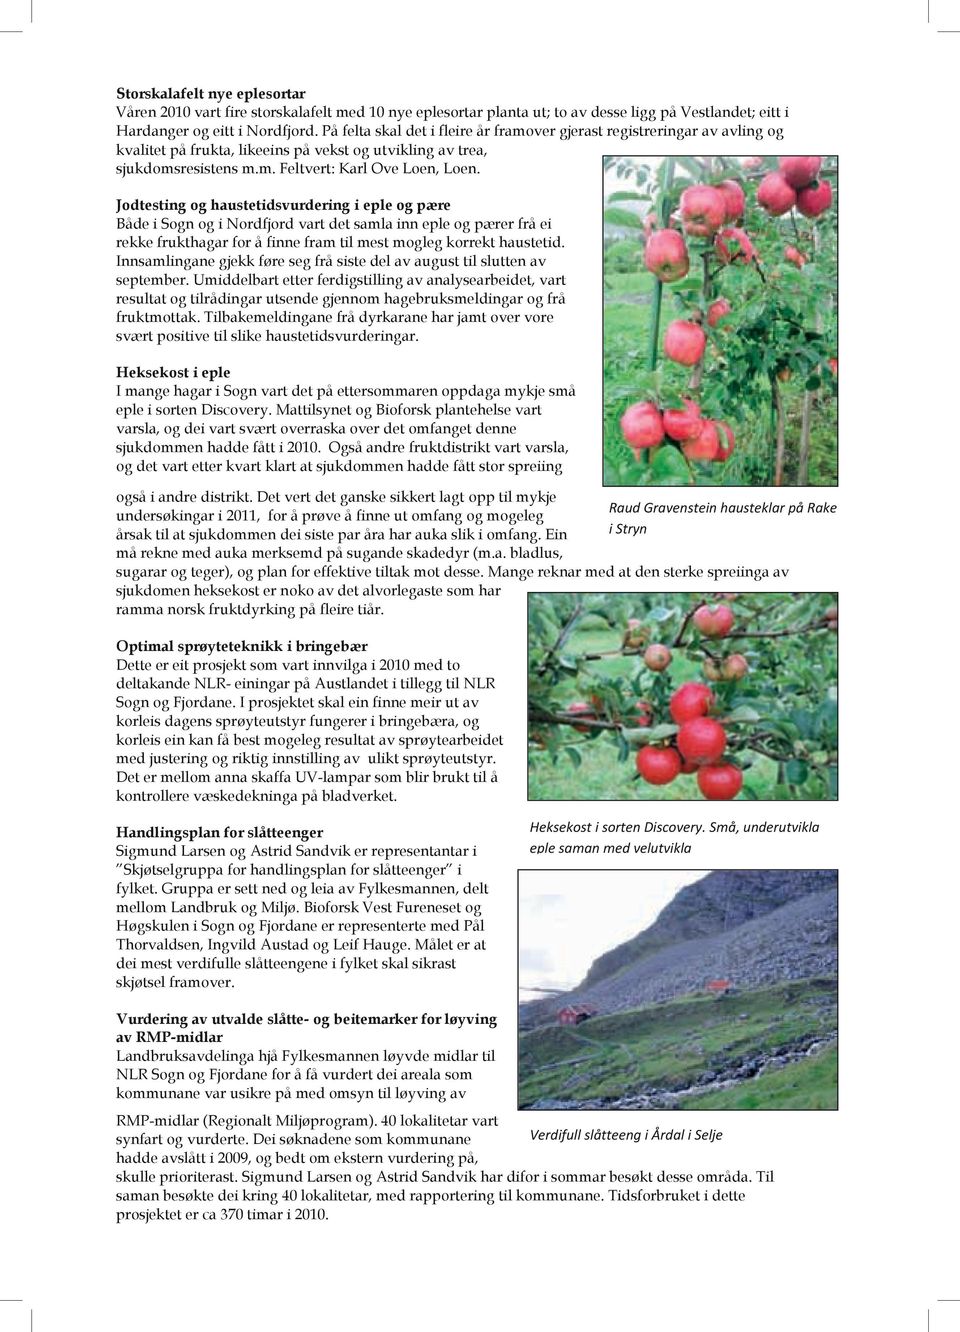 Jodtesting og haustetidsvurdering i eple og pære Både i Sogn og i Nordfjord vart det samla inn eple og pærer frå ei rekke frukthagar for å finne fram til mest mogleg korrekt haustetid.